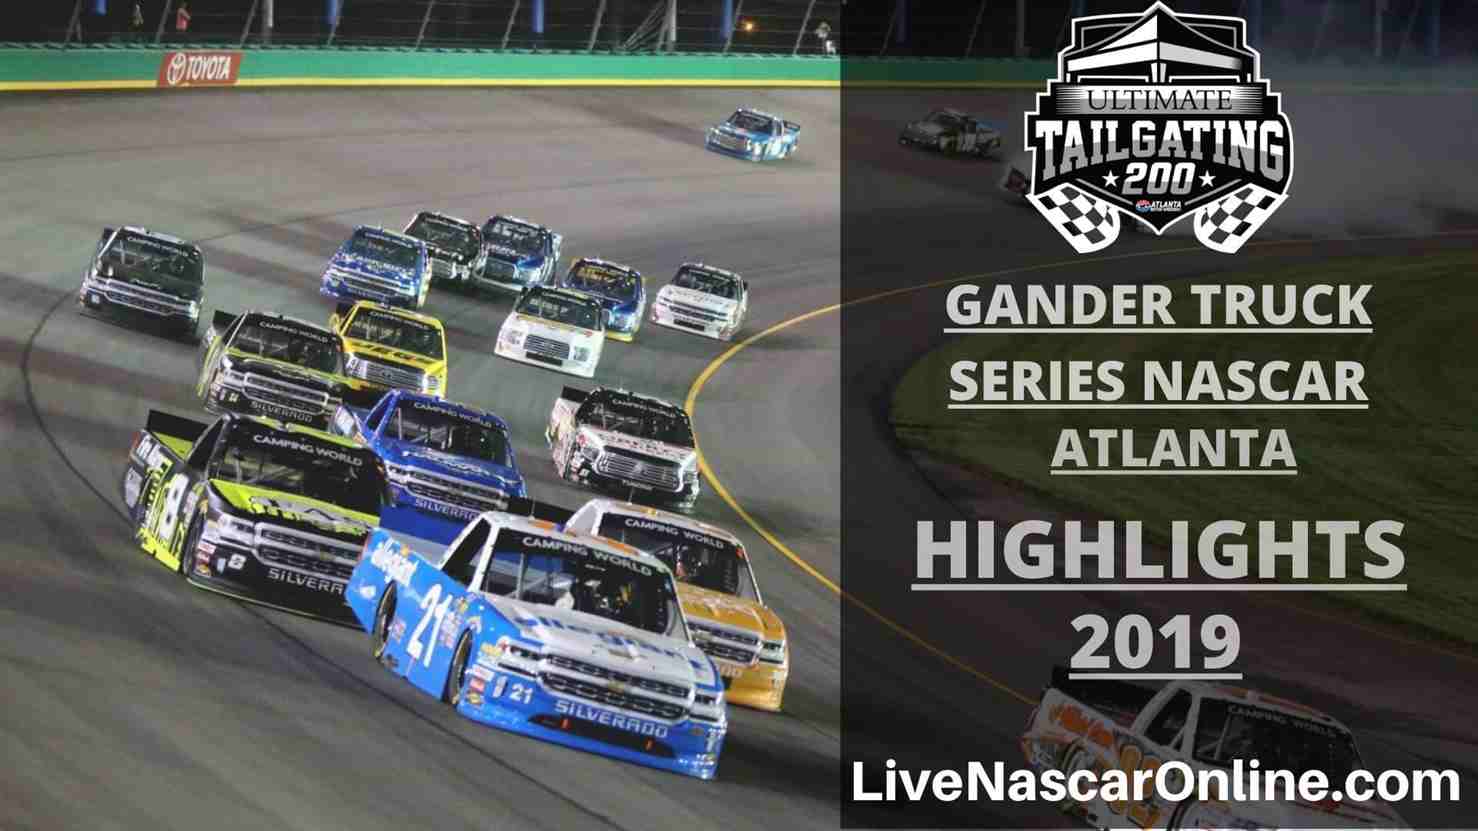 NASCAR GANDER TRUCK SERIES HIGHLIGHTS 2019 ATLANTA 200 